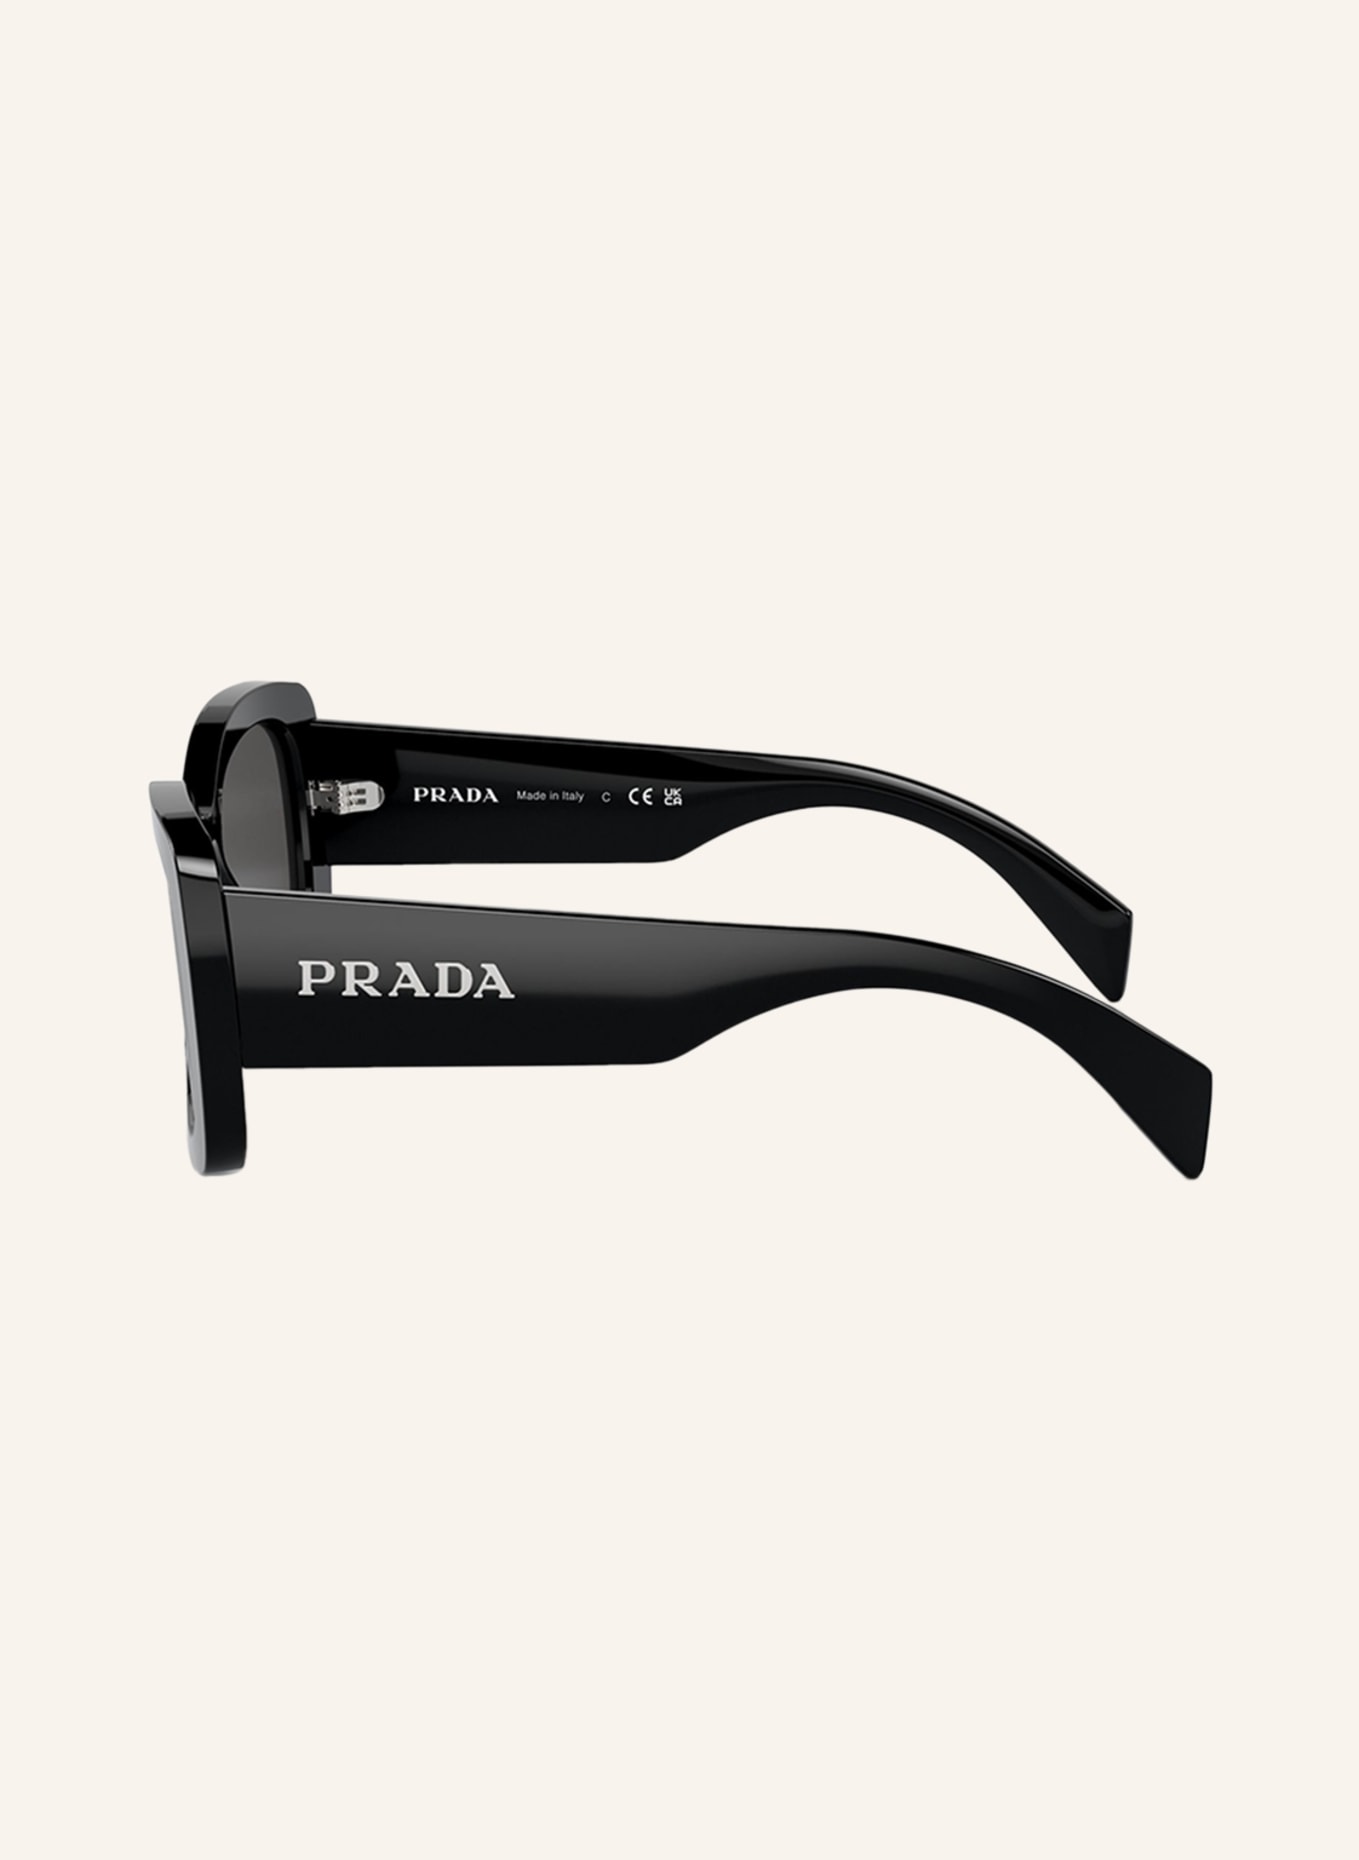 PRADA LINEA ROSSA Sunglasses PR A08S, Color: 1AB5S0 - BLACK/DARK GRAY (Image 4)